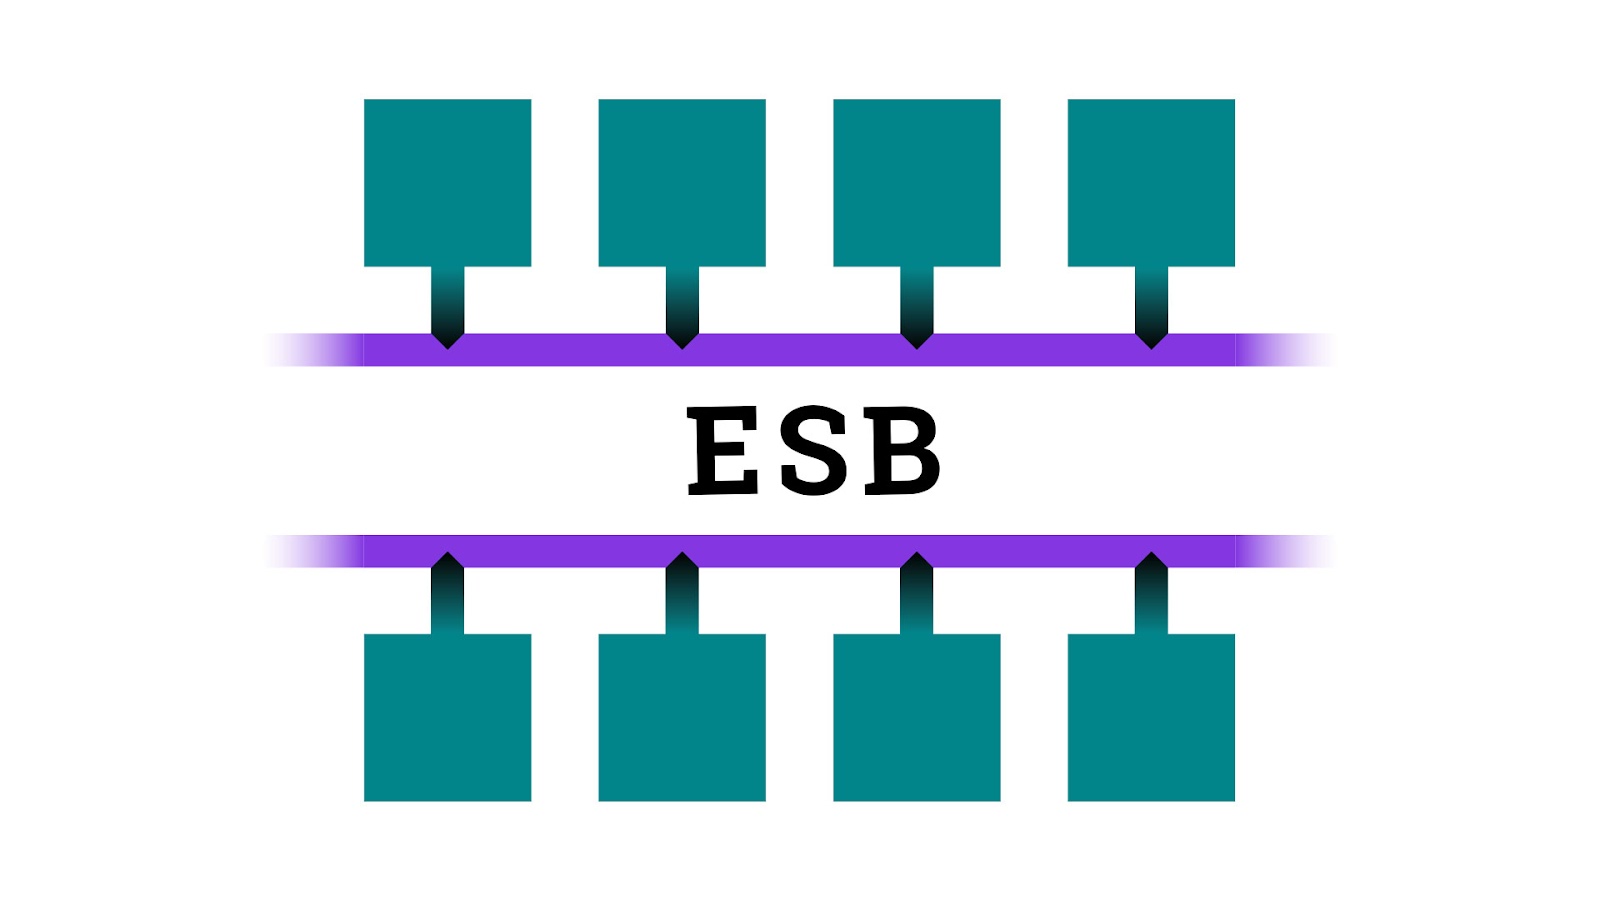 От хаоса к порядку: как легко интегрировать сервисы с помощью Enterprise Service Bus - 1